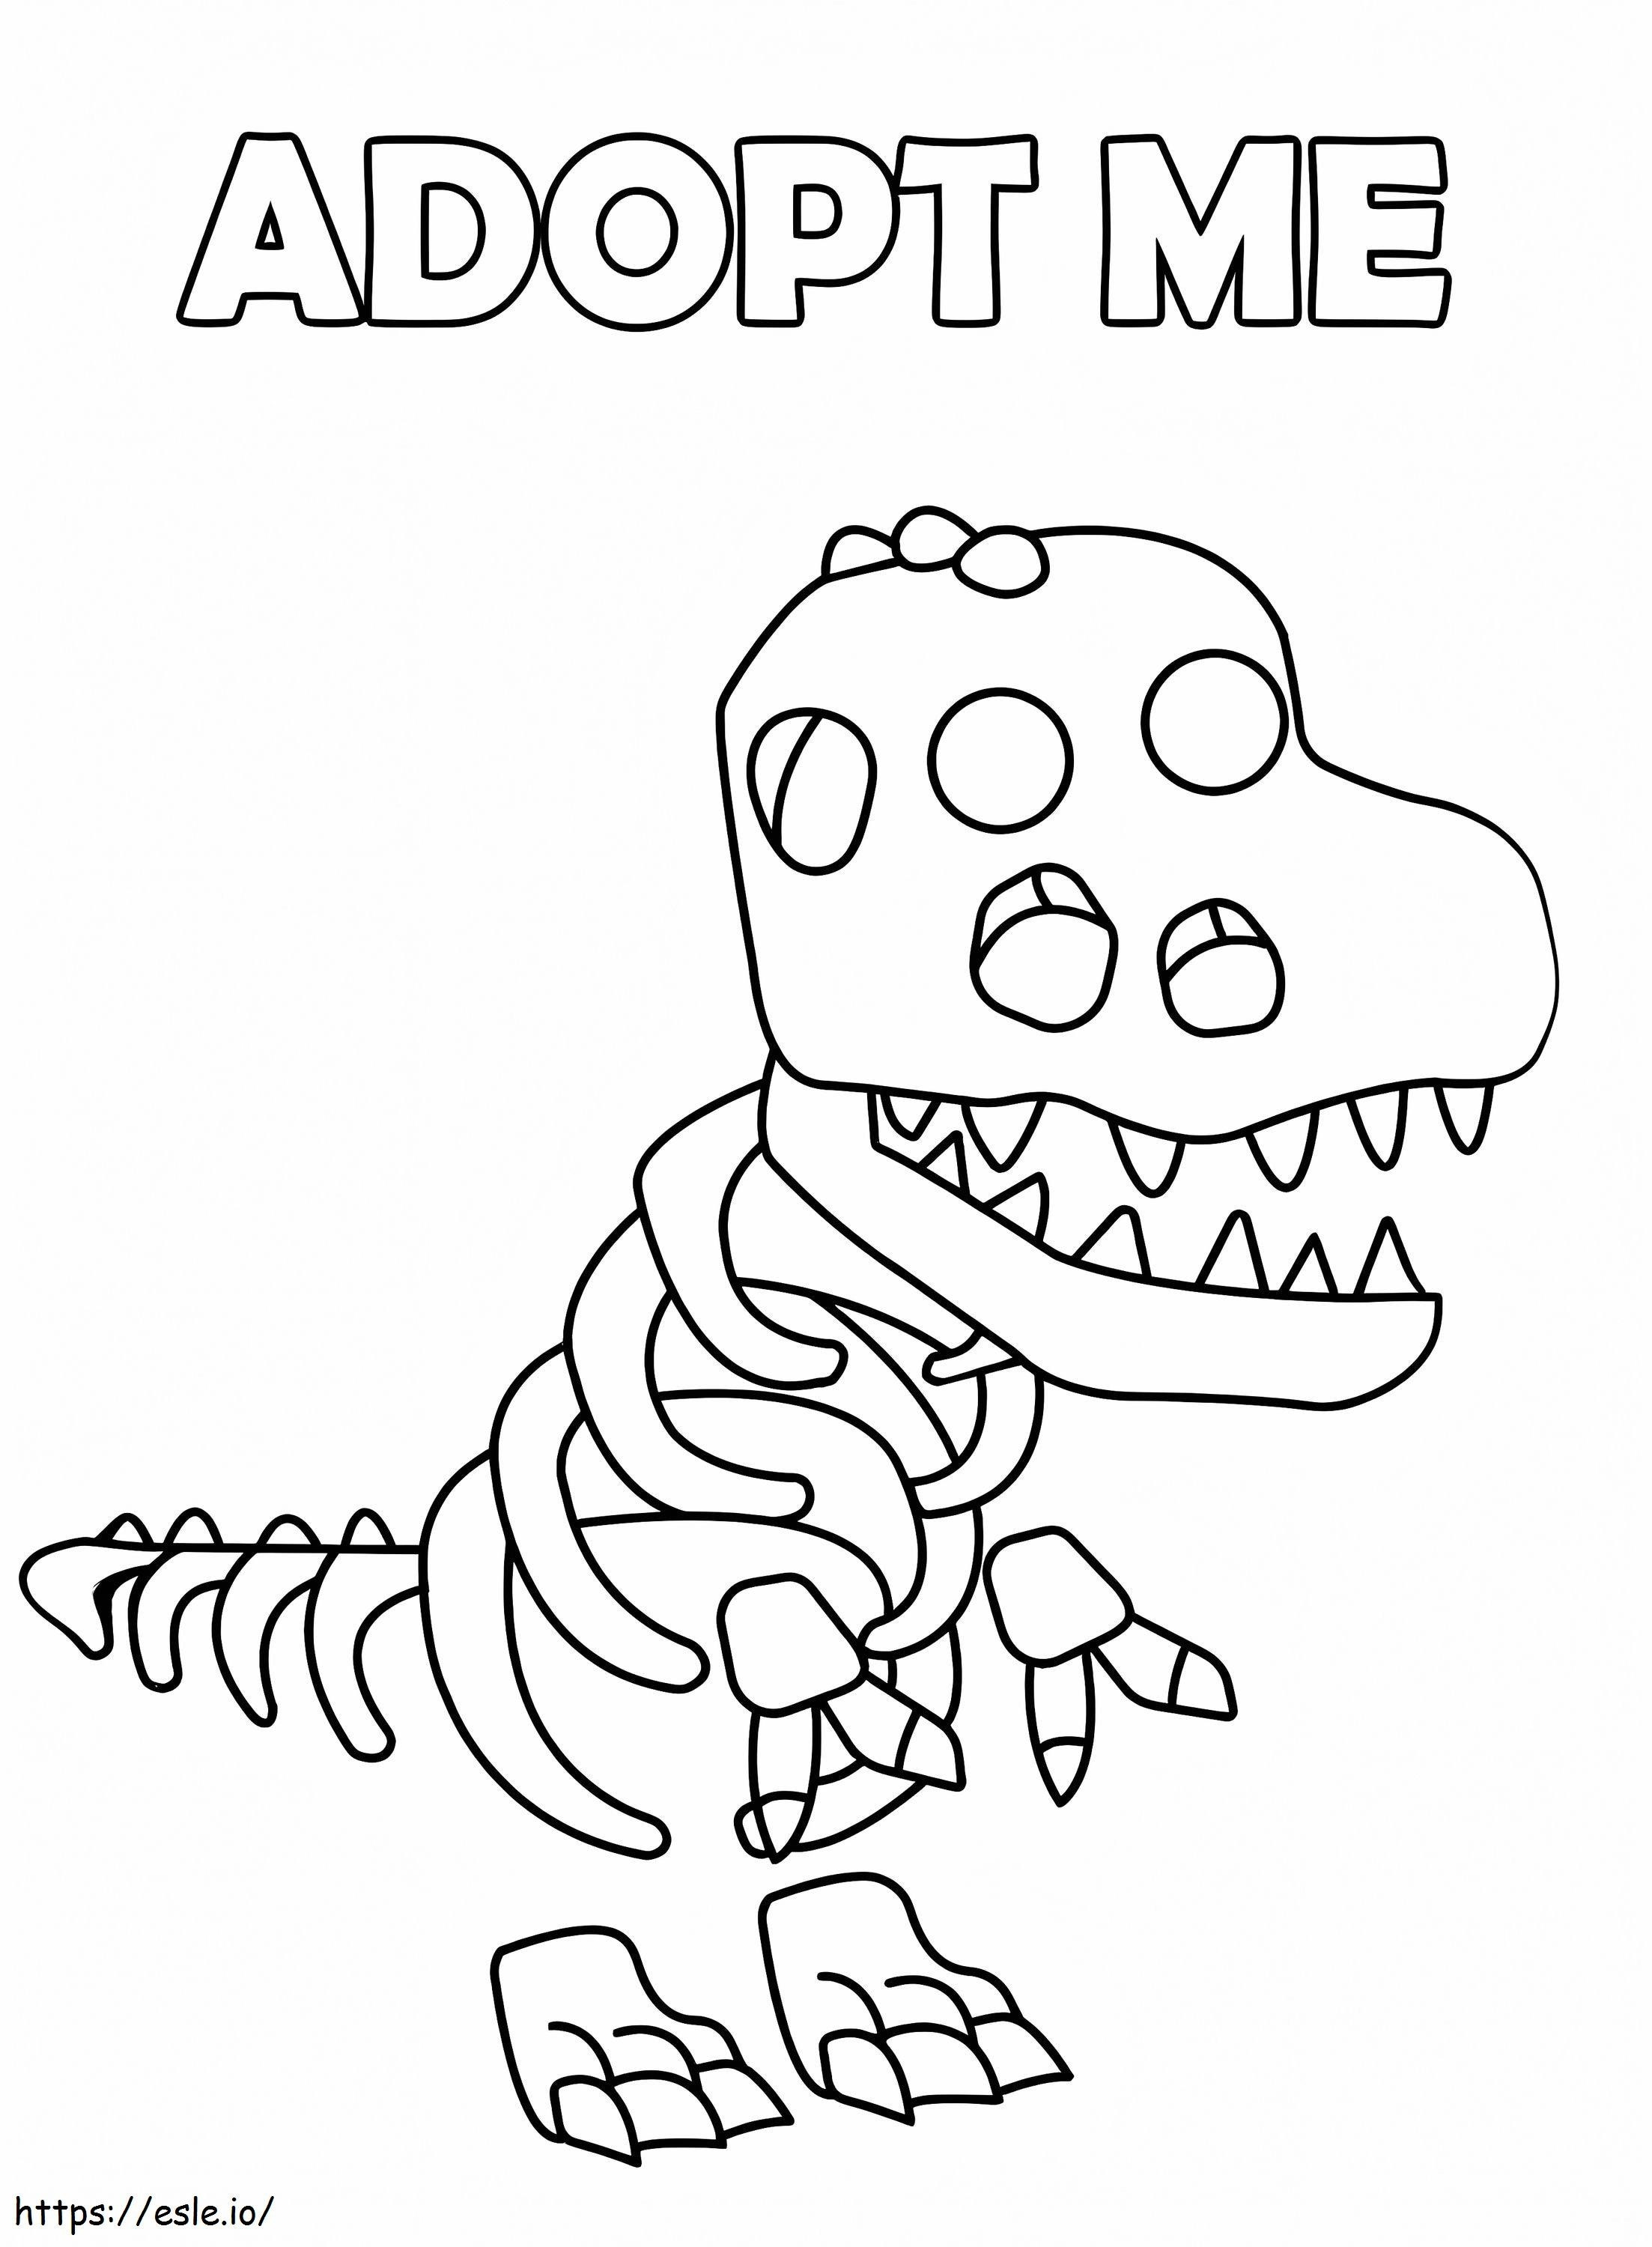 Skeleton Rex Adopt Me coloring page